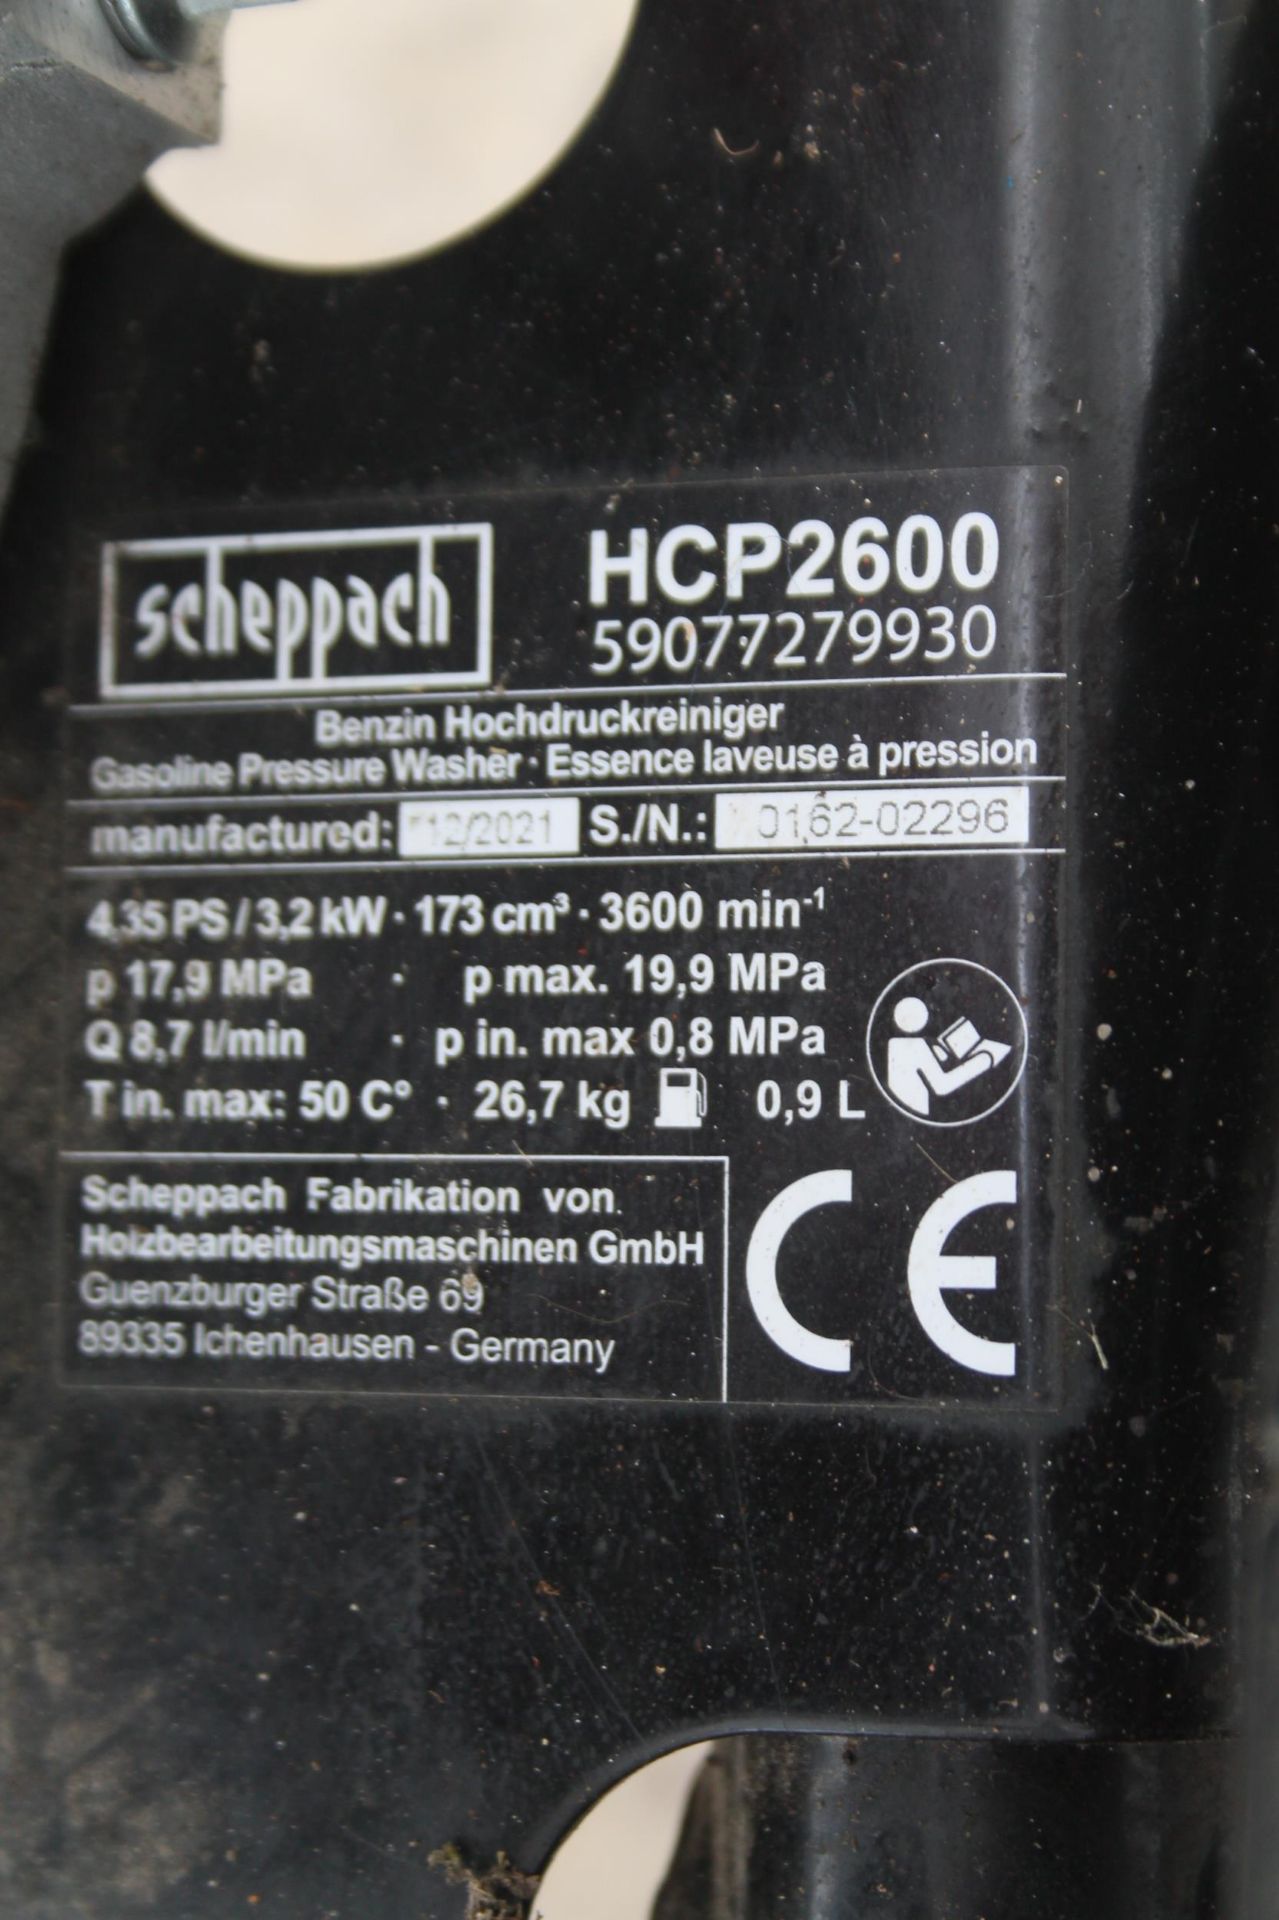 SCHEPPACH 173CC PRESSURE WASHER HPC2600 NO VAT - Image 3 of 3